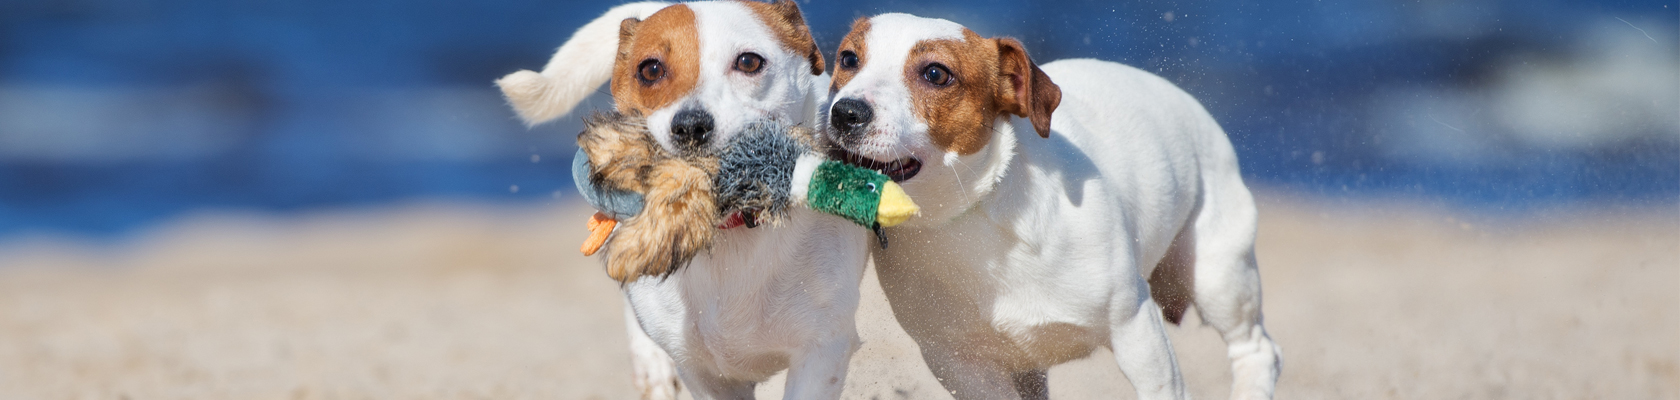 Dog Beach Spiagge Per Cani In Sardegna Lista 2019